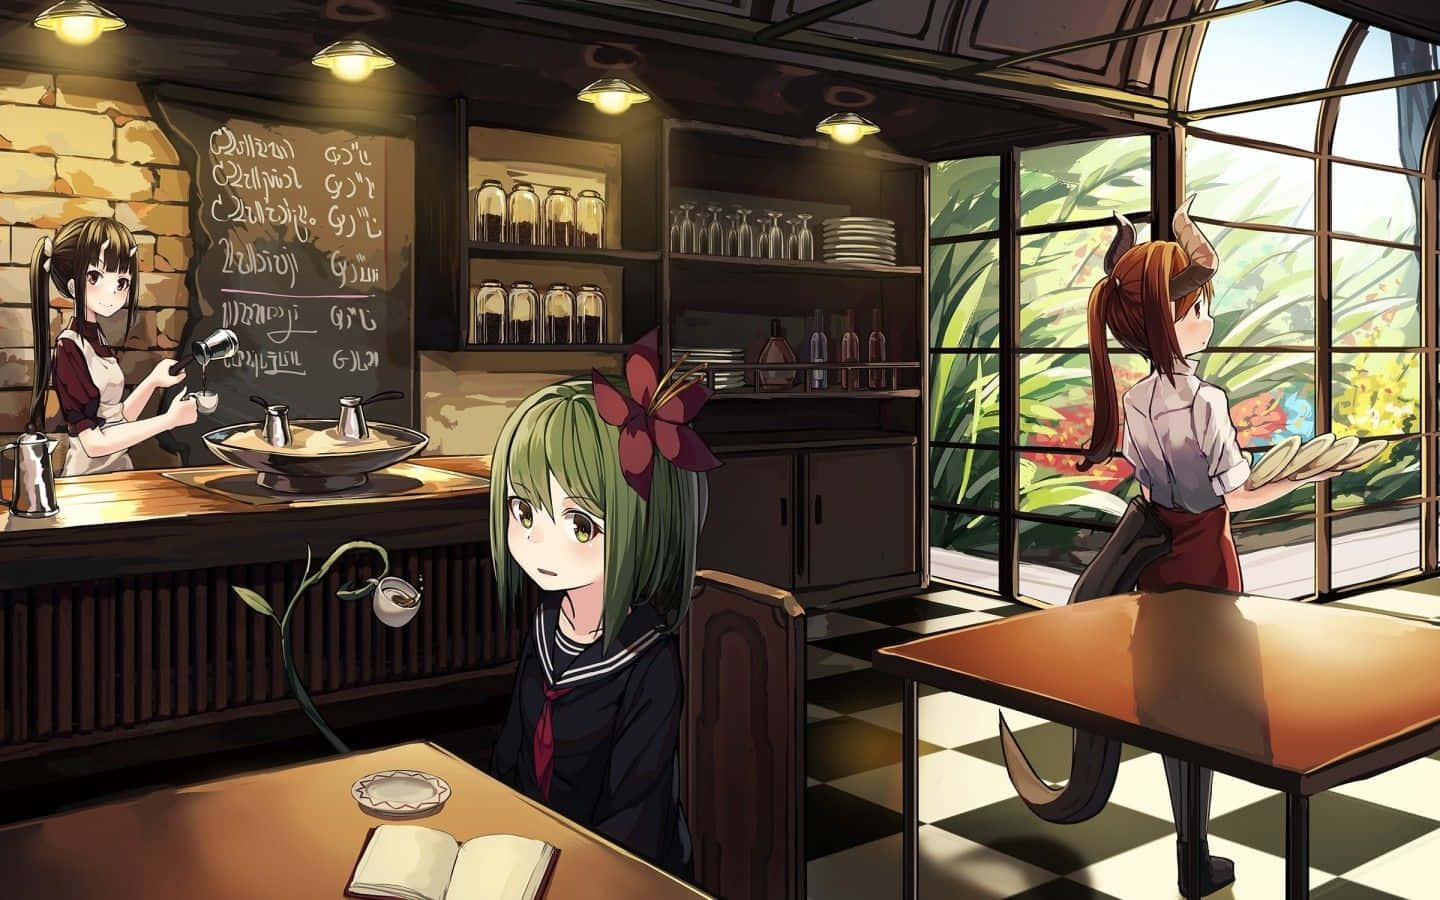 Lustauf Einen Kaffee In Einzigartiger Atmosphäre? Besuchen Sie Das Cafe Anime, Wo Ihre Lieblingsgetränke Jetzt In Einer Lebendigen, Vom Anime Inspirierten Umgebung Serviert Werden! Wallpaper